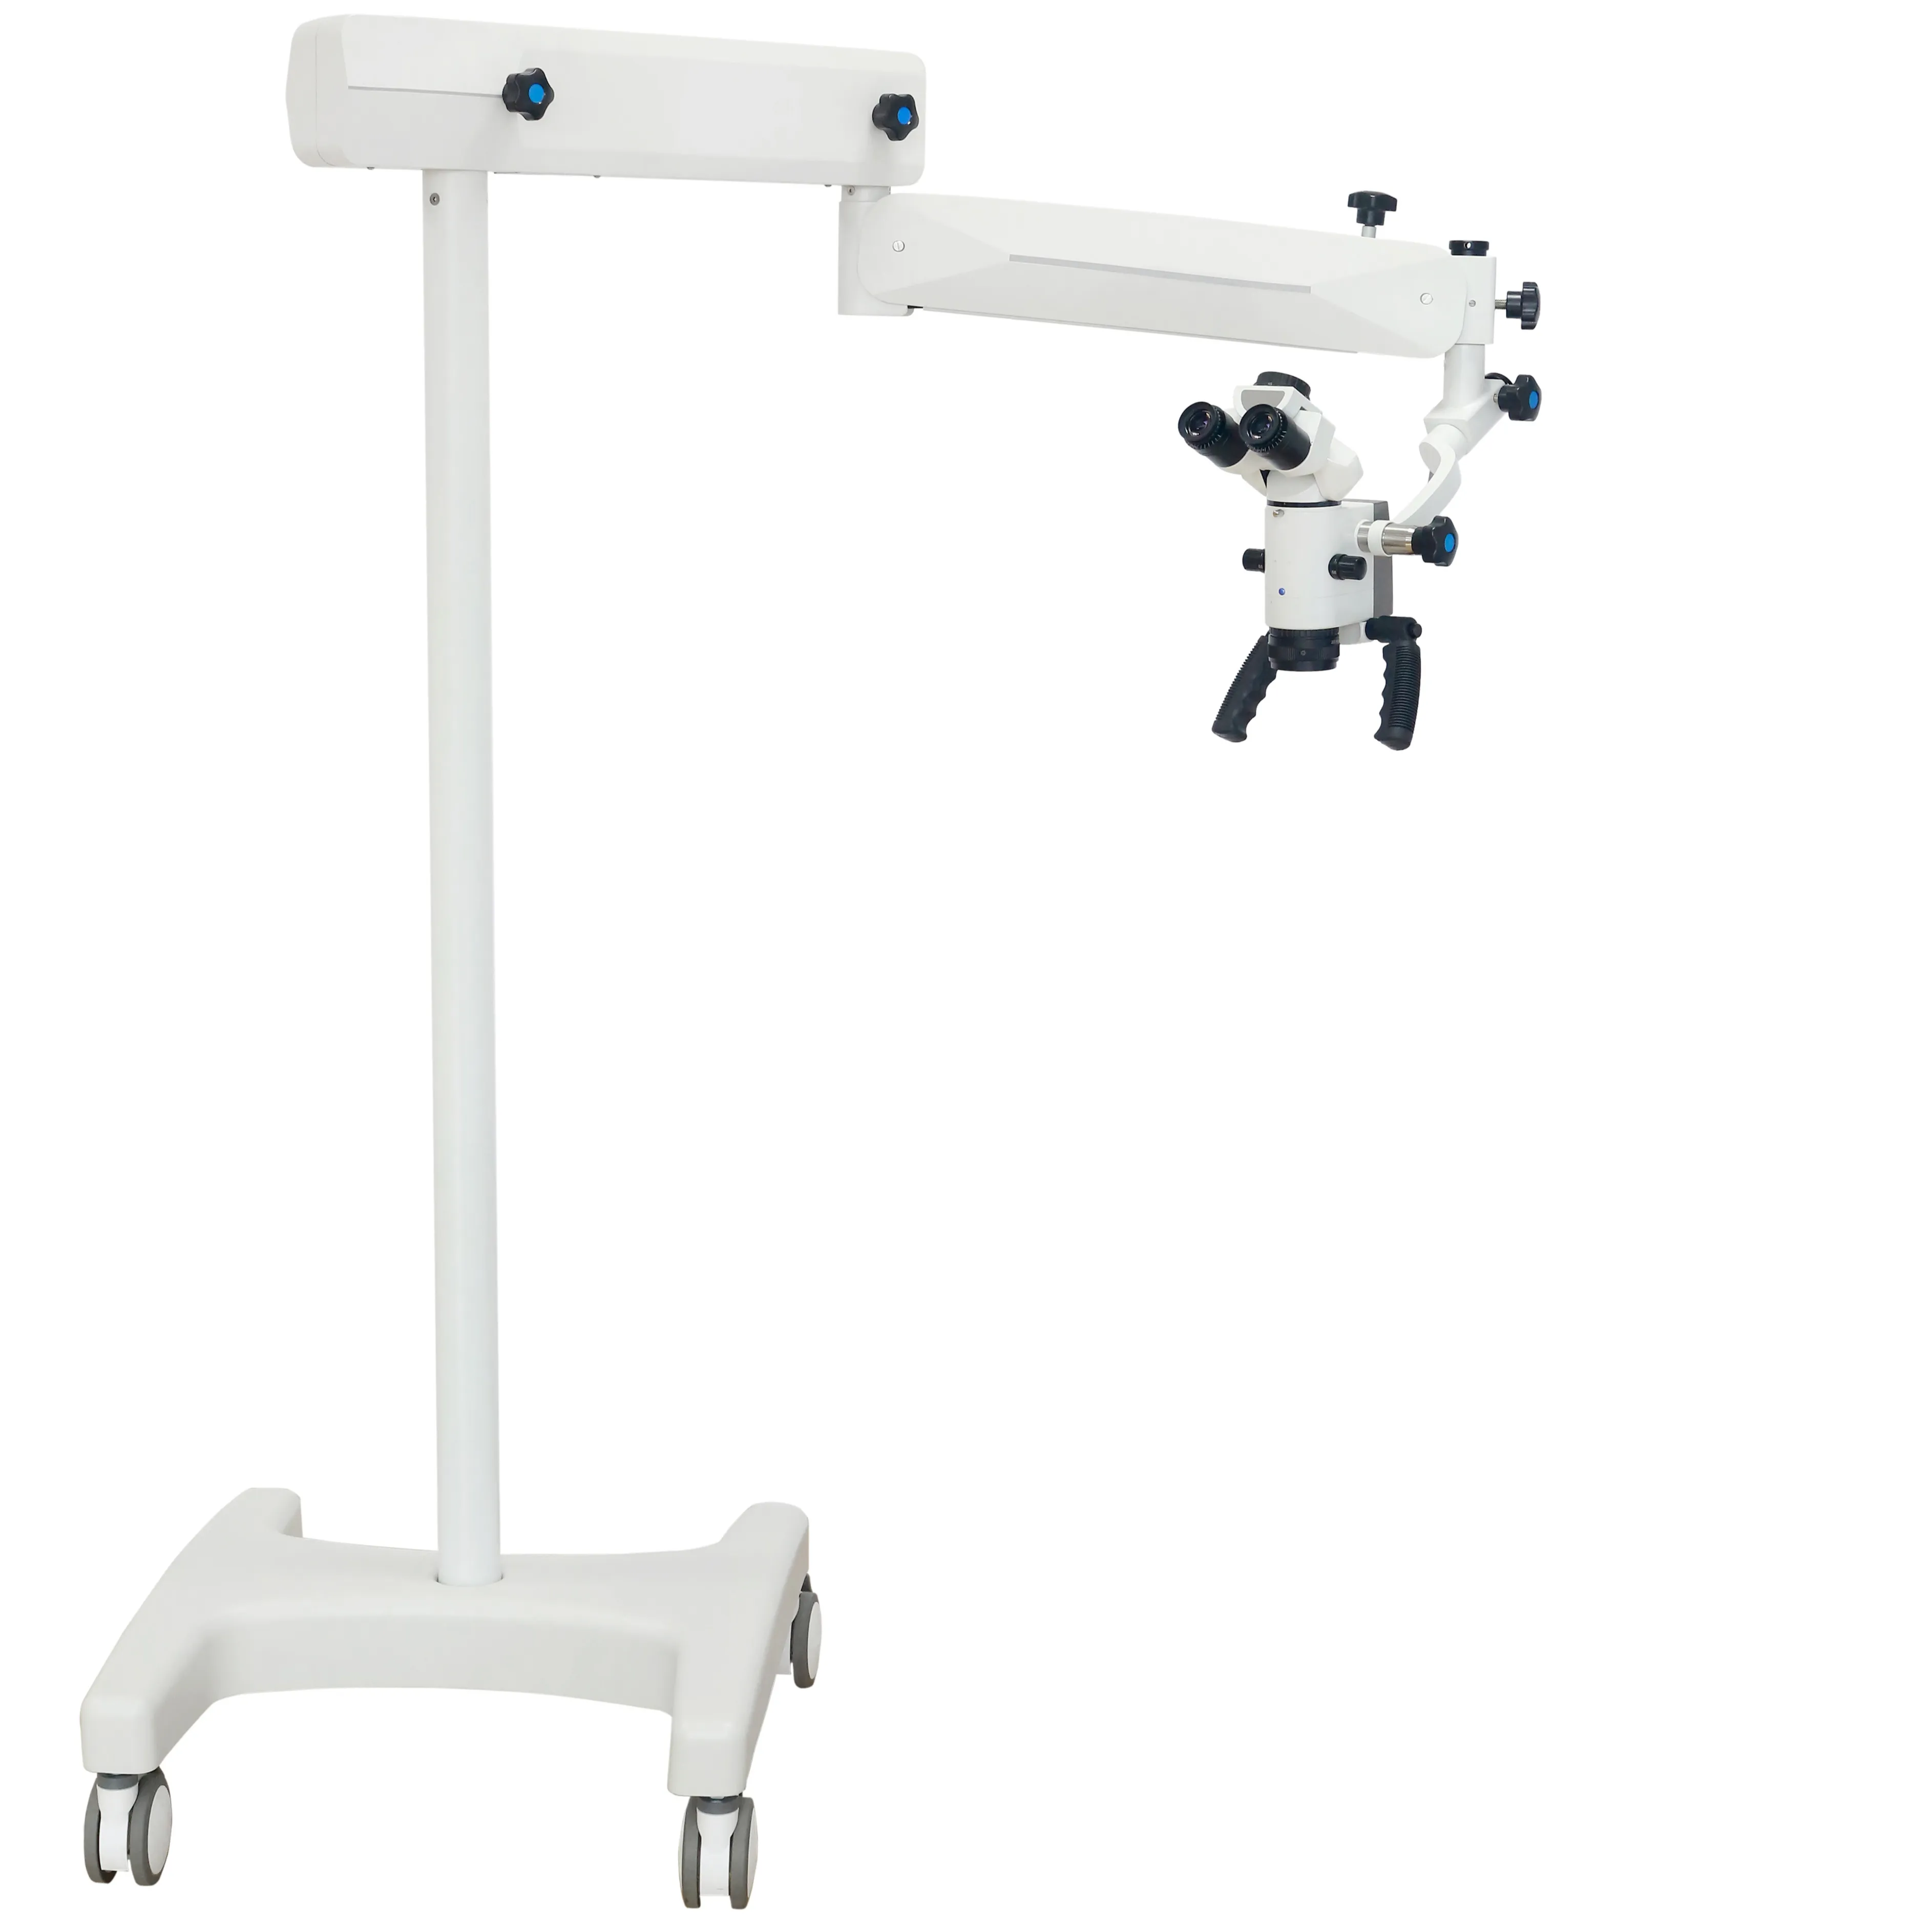 Светодиодный BULIT-IN D680 напольная подставка модель SME3600 серии операционный микроскоп для ЛОР-стоматологическая хирургия